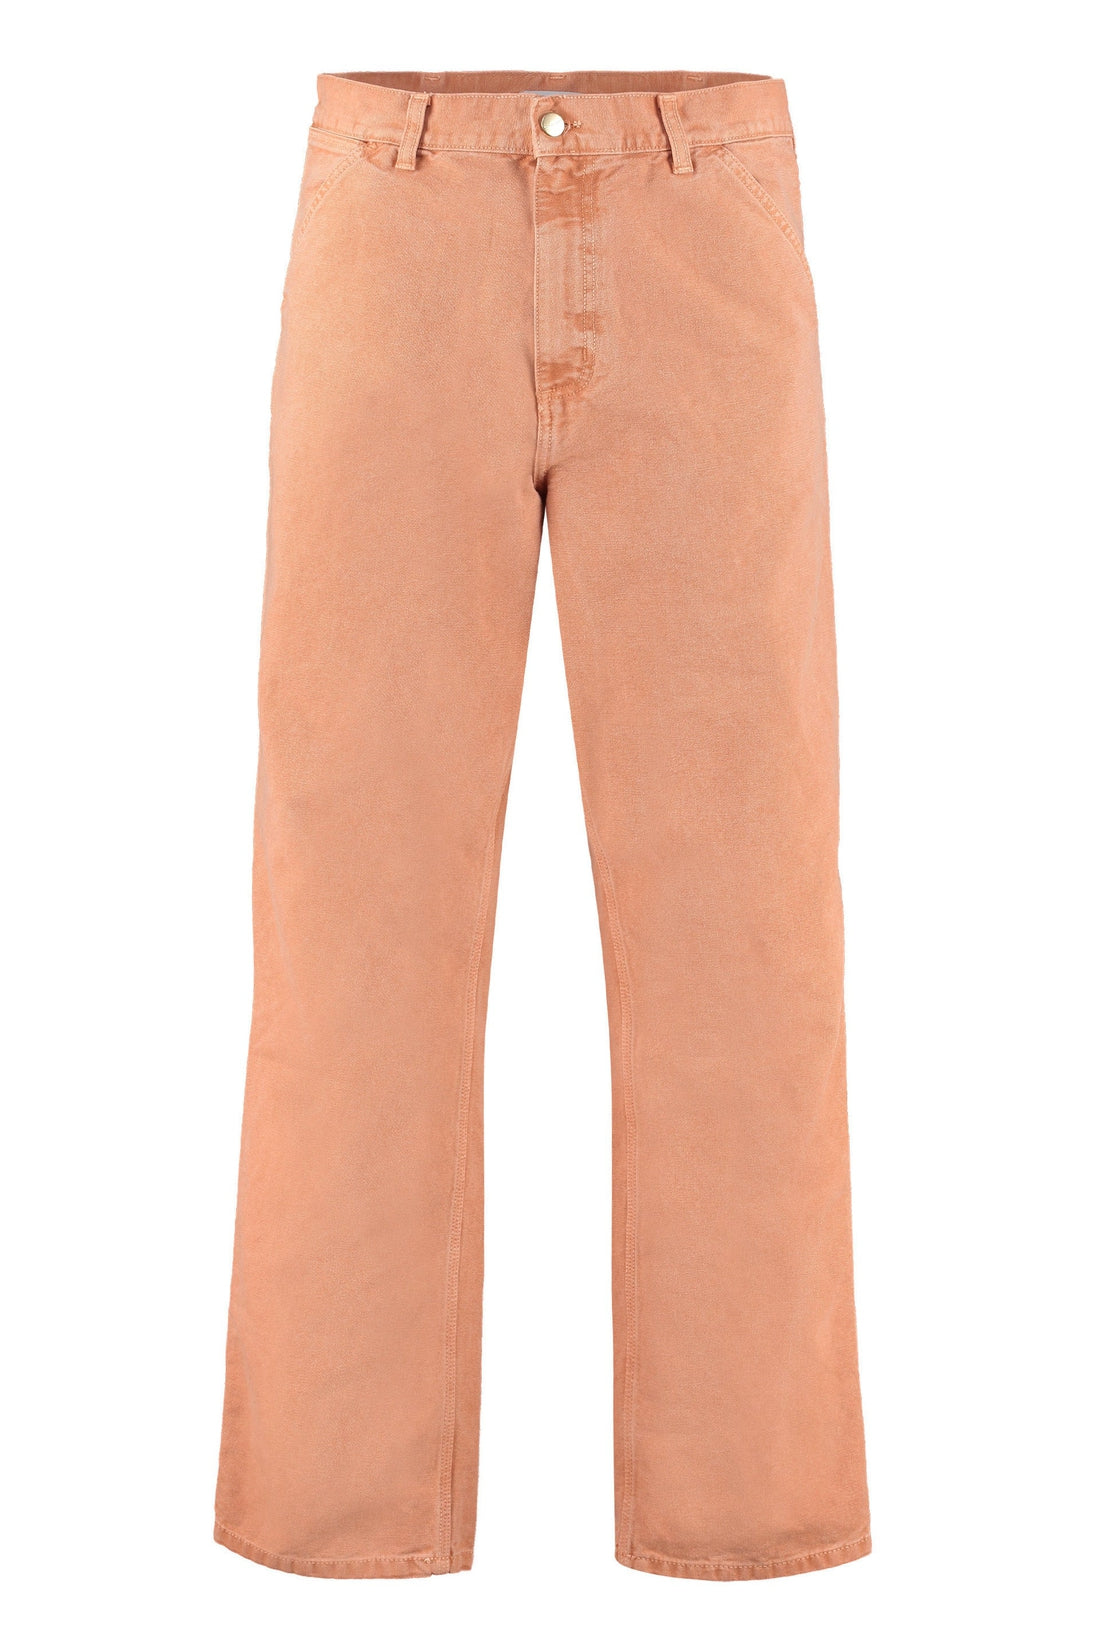 Carhartt-OUTLET-SALE-Cotton trousers-ARCHIVIST